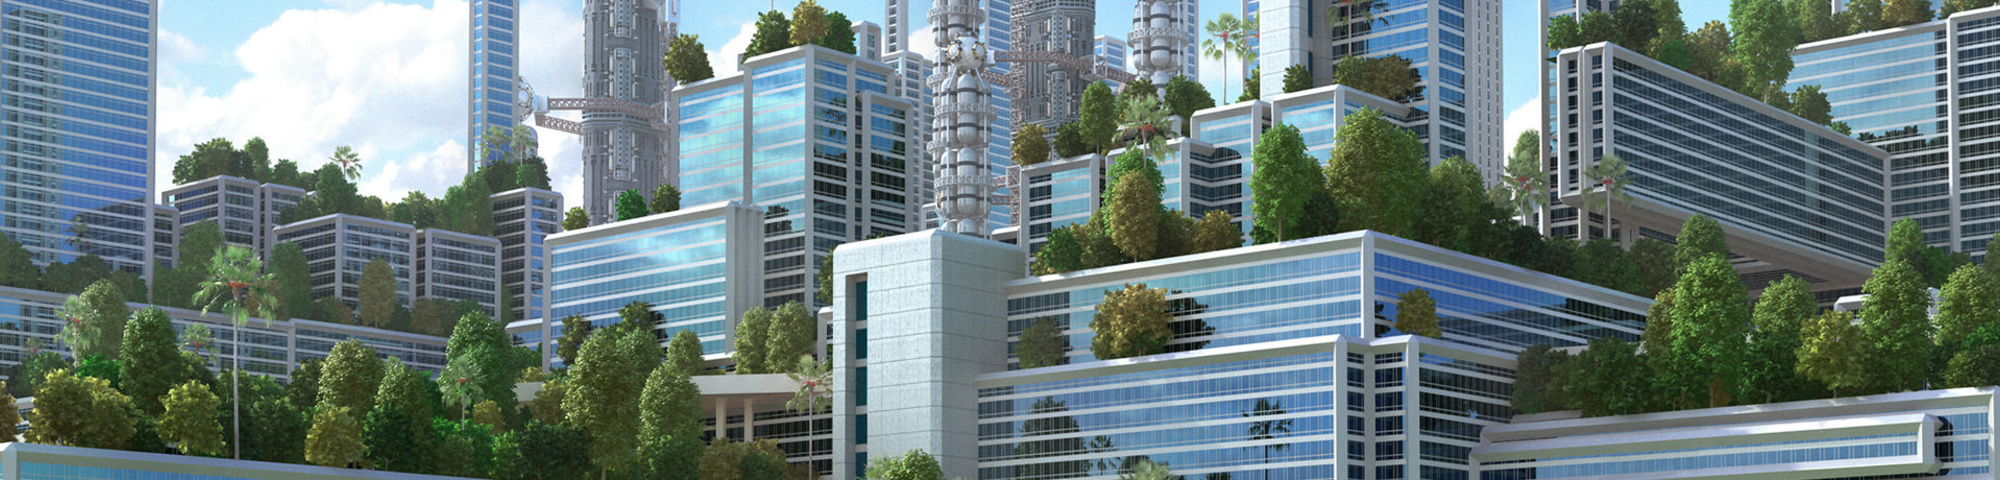 Drzewa miejskie dla przyszłości